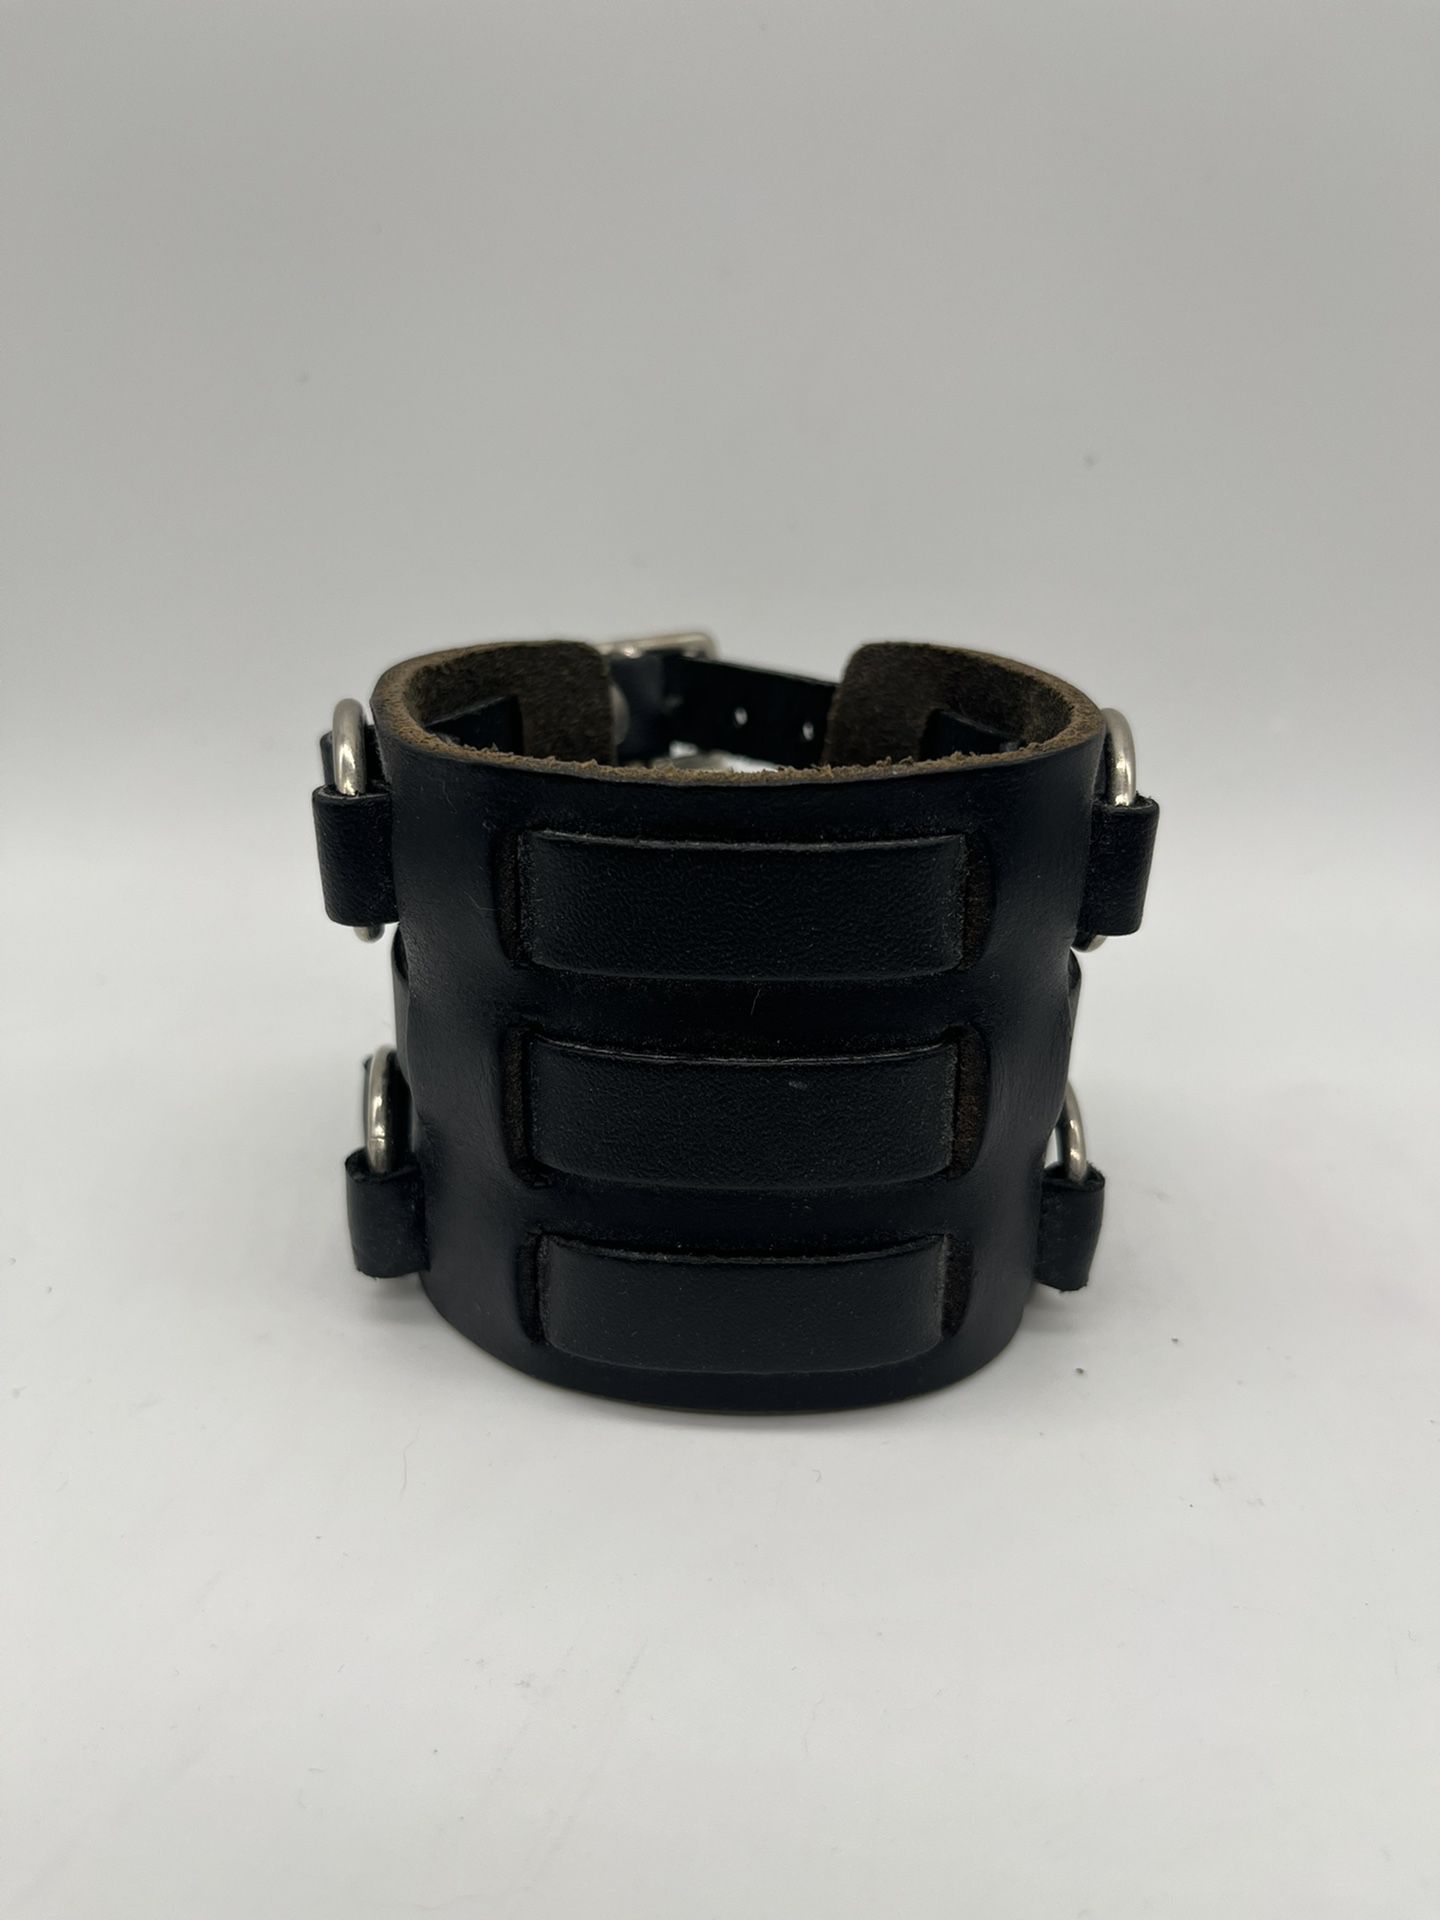 Leather Bracelet with 3 Straps. U.S.A.